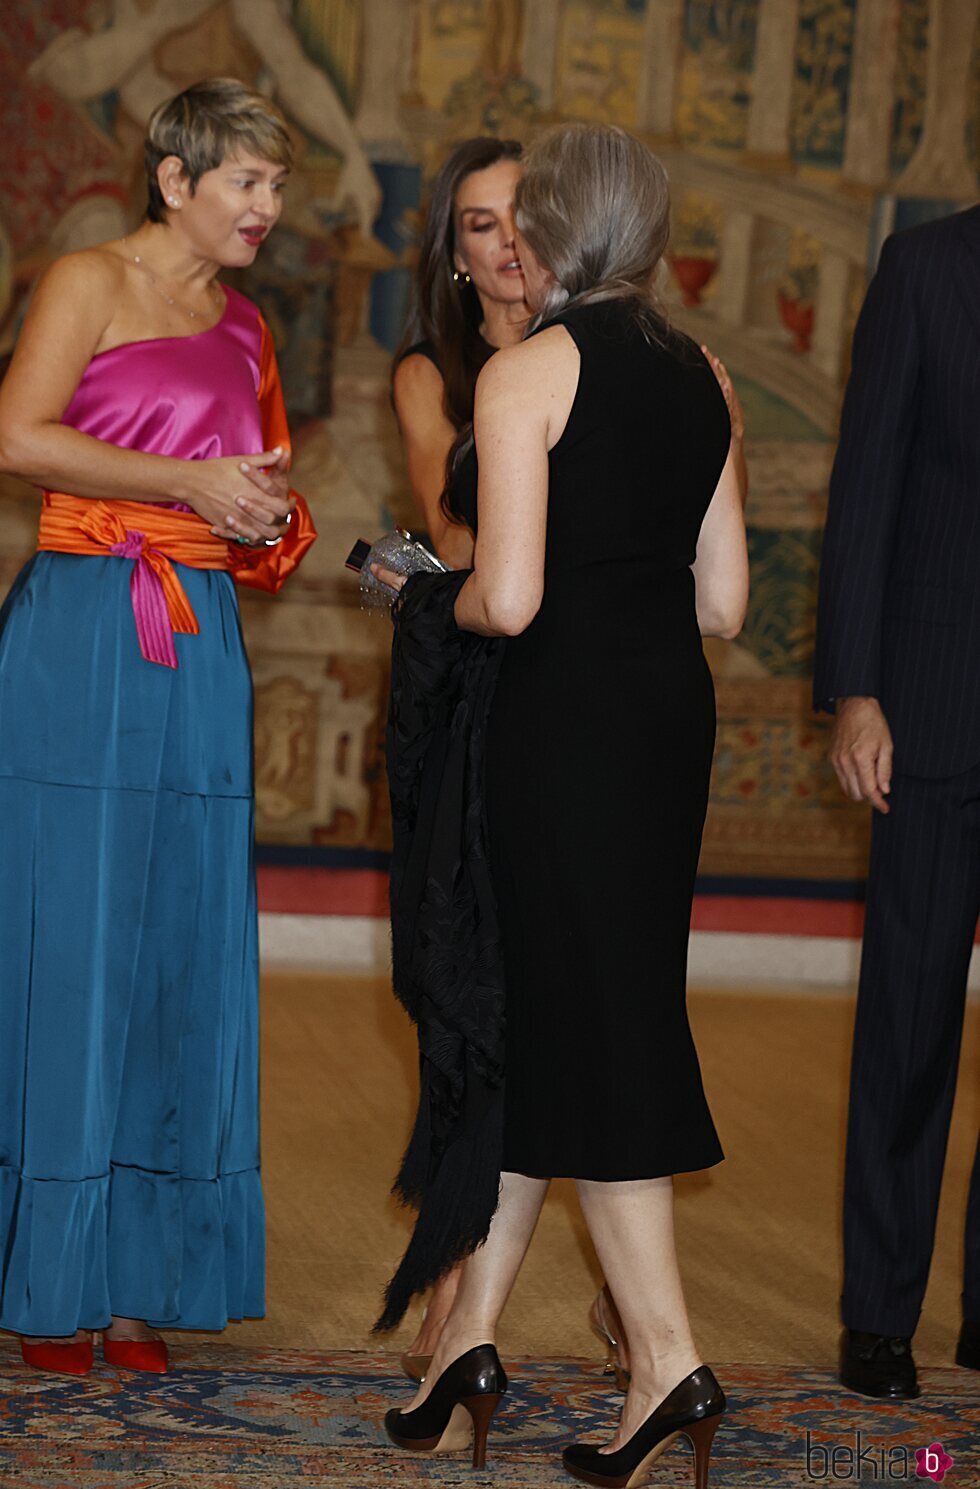 Verónica Alcocer y la Reina Letizia saludan a María Pagés en la recepción del Presidente de Colombia a los Reyes de España